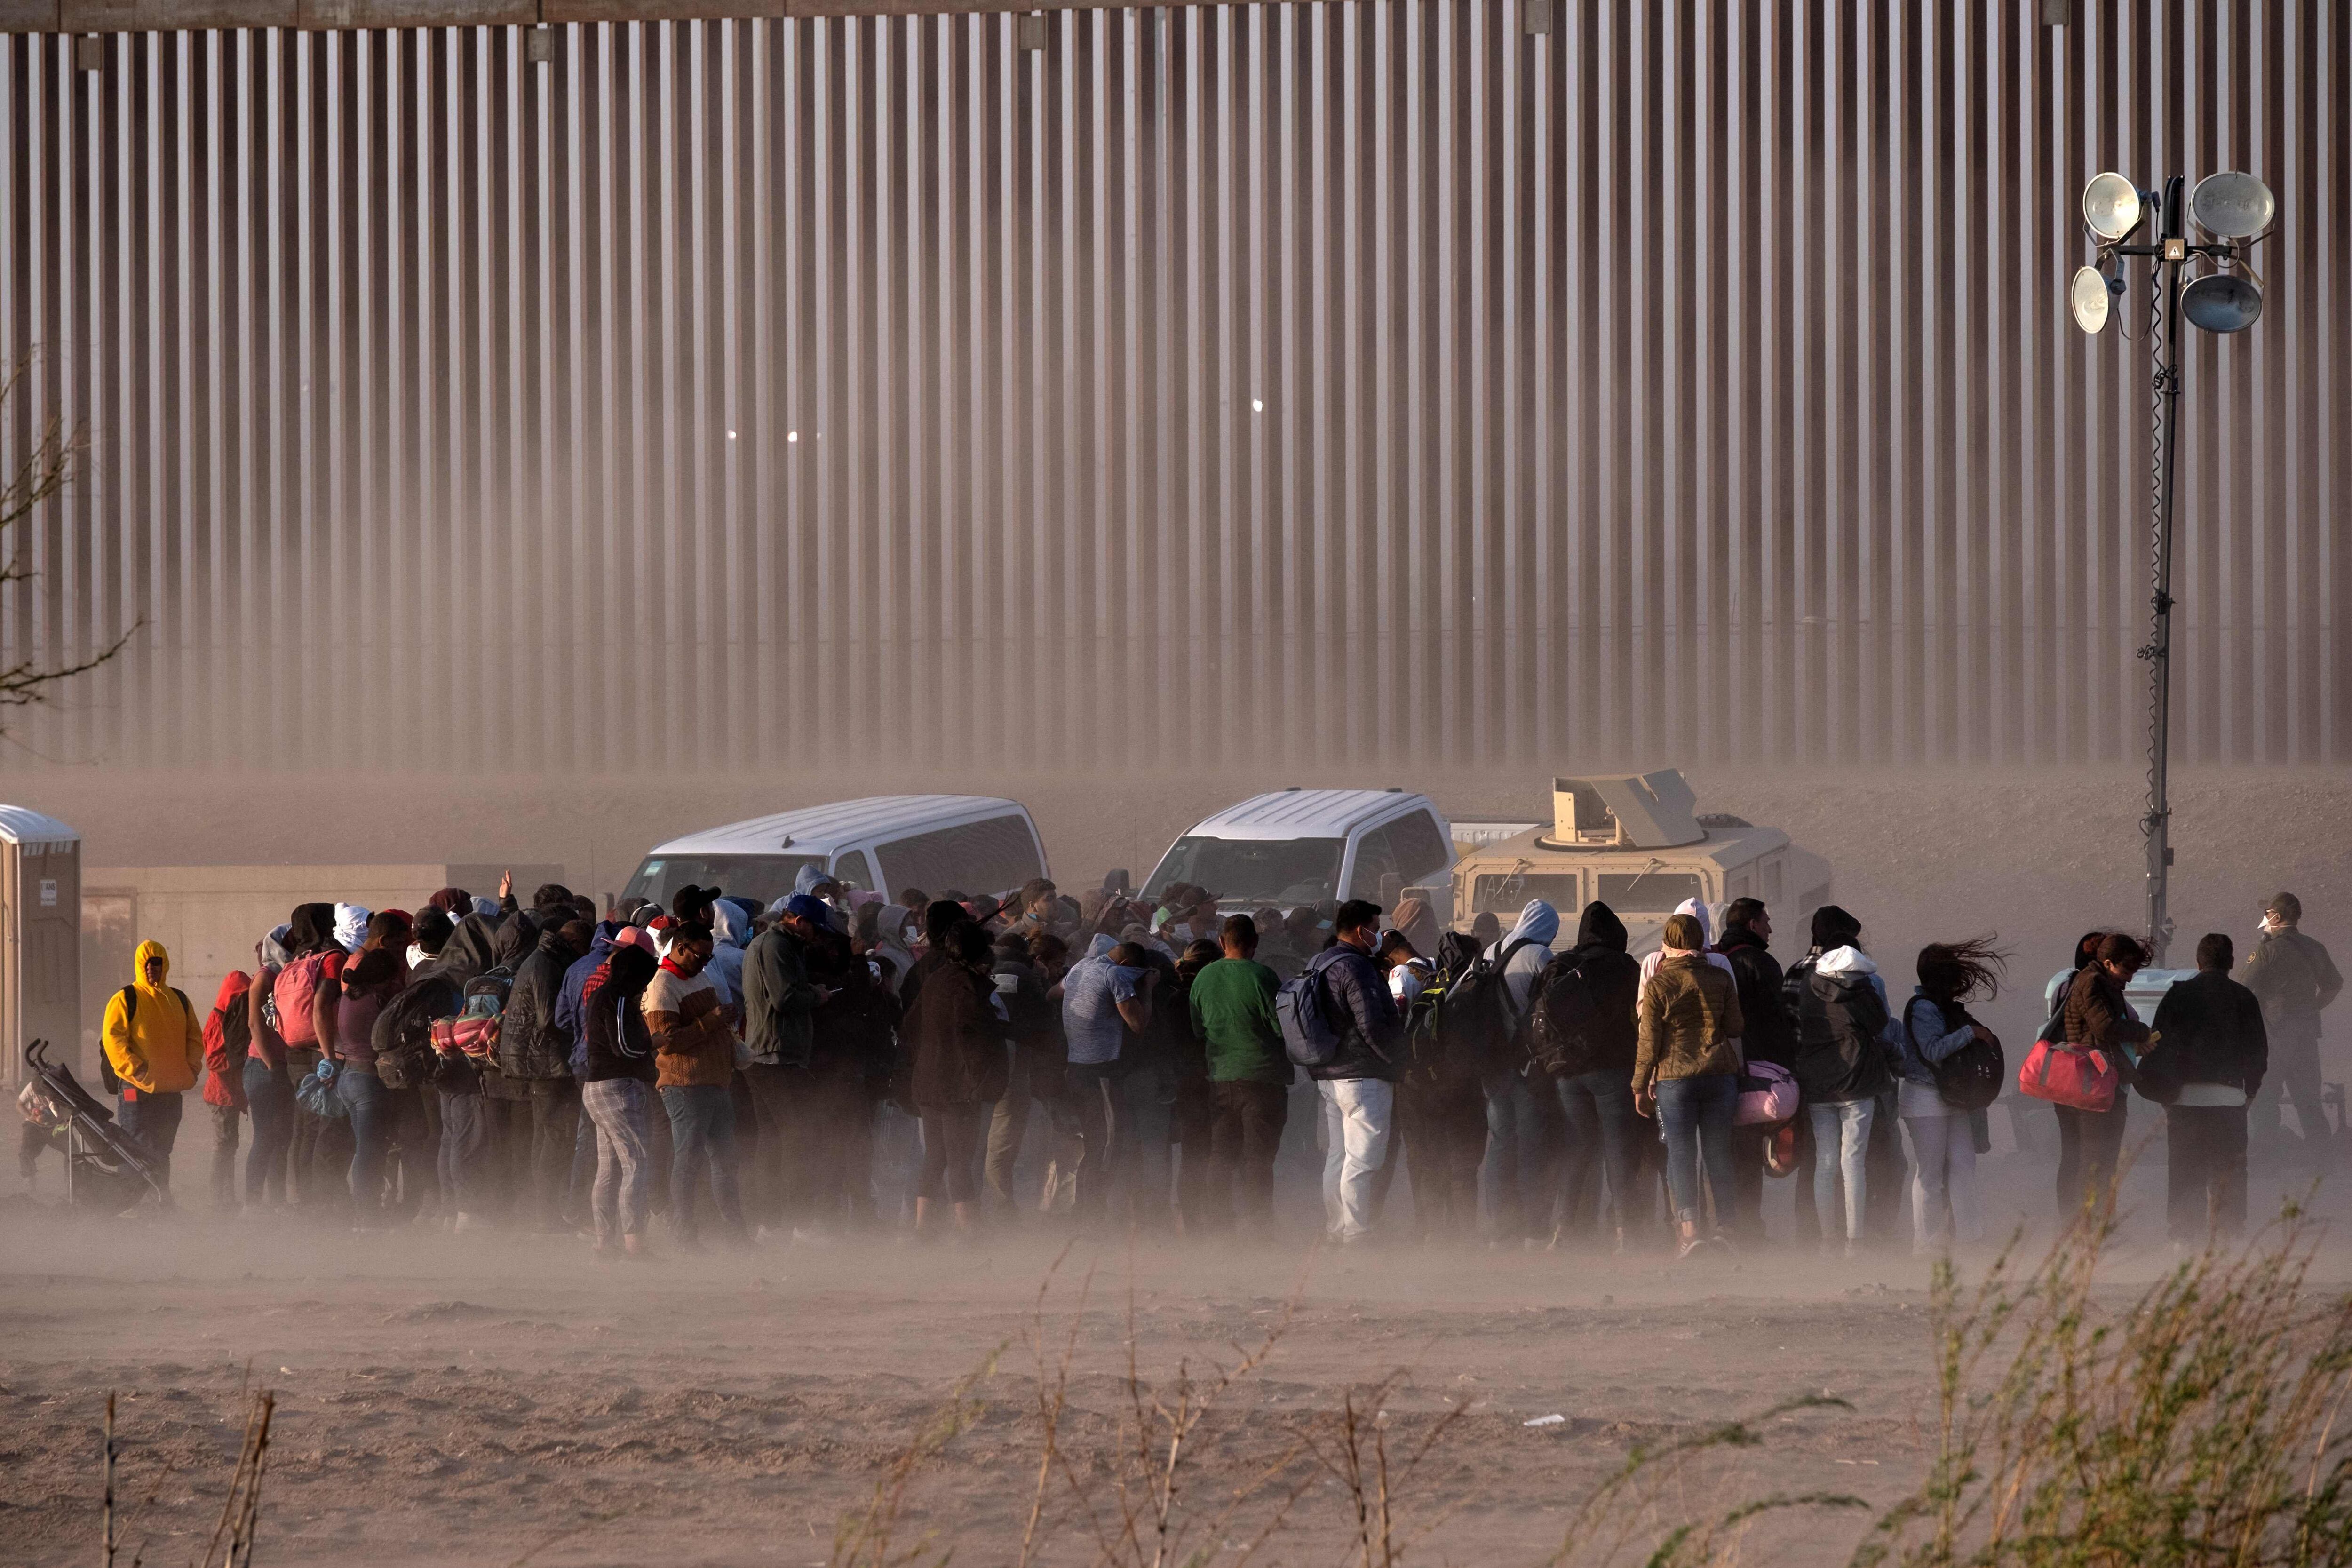 Ciudad fronteriza con México está en estado de emergencia a la espera de ‘miles de migrantes’